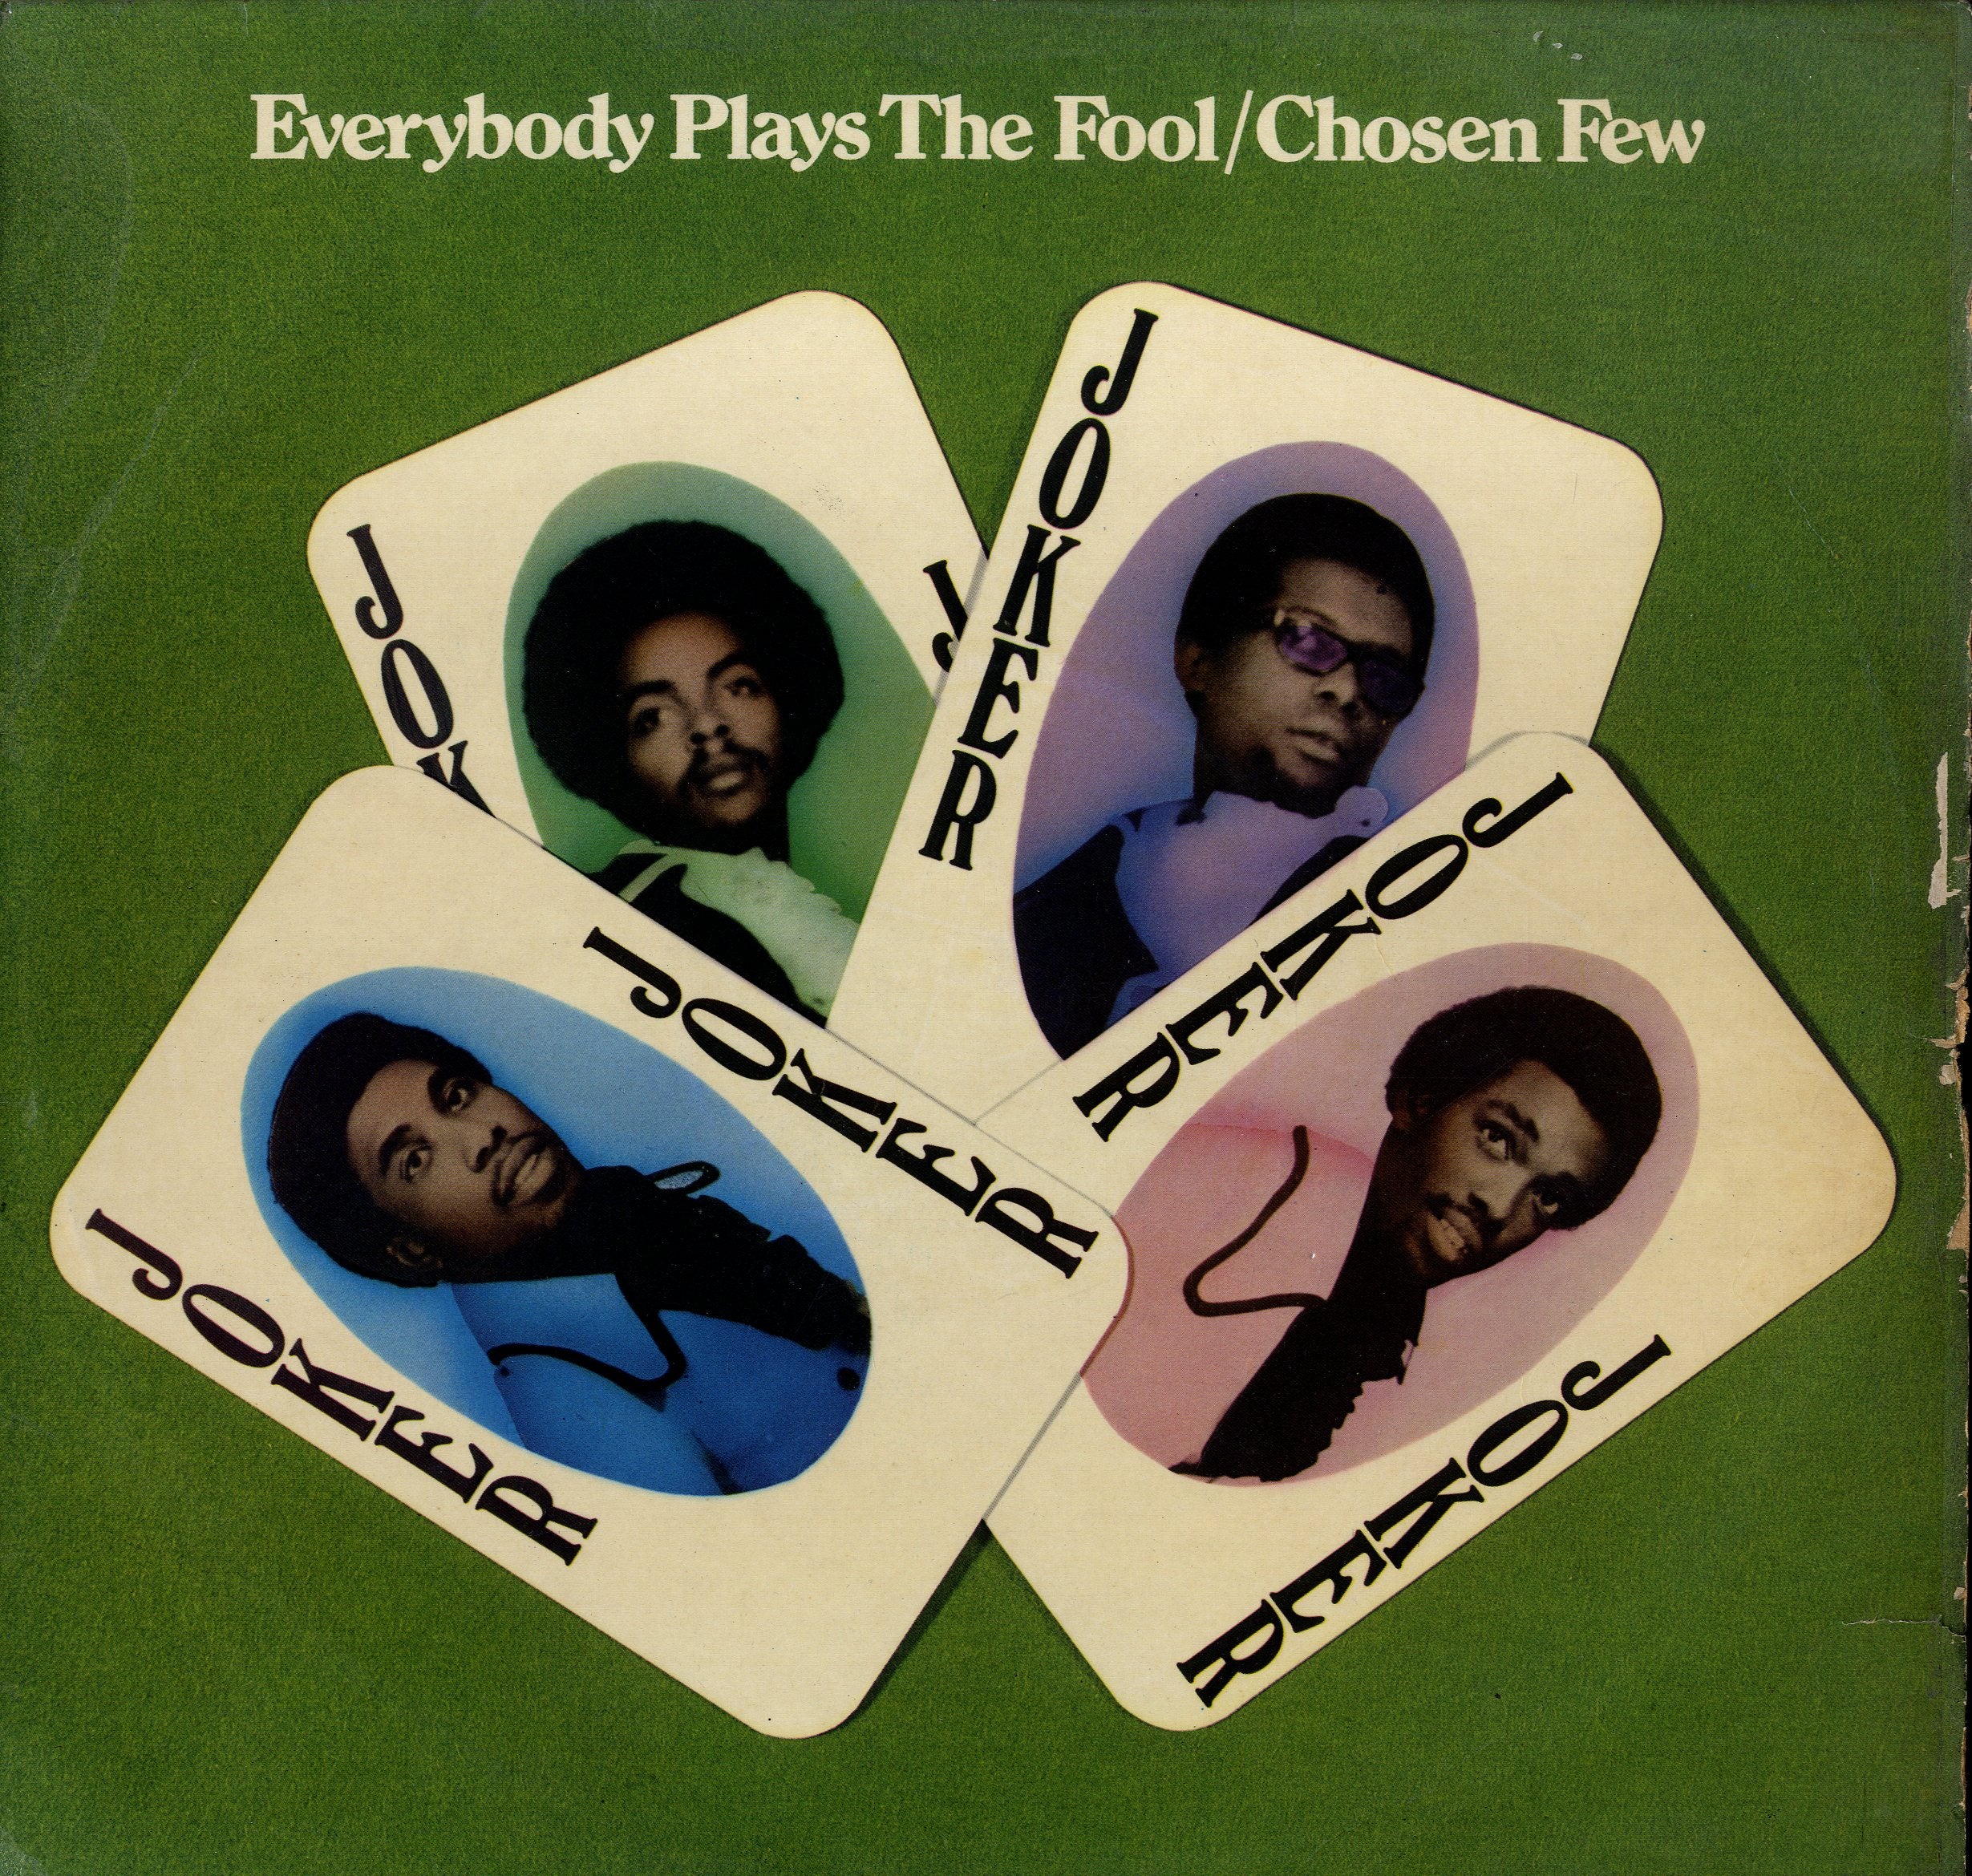 CHOSEN FEW [Everybody Plays The Fool]